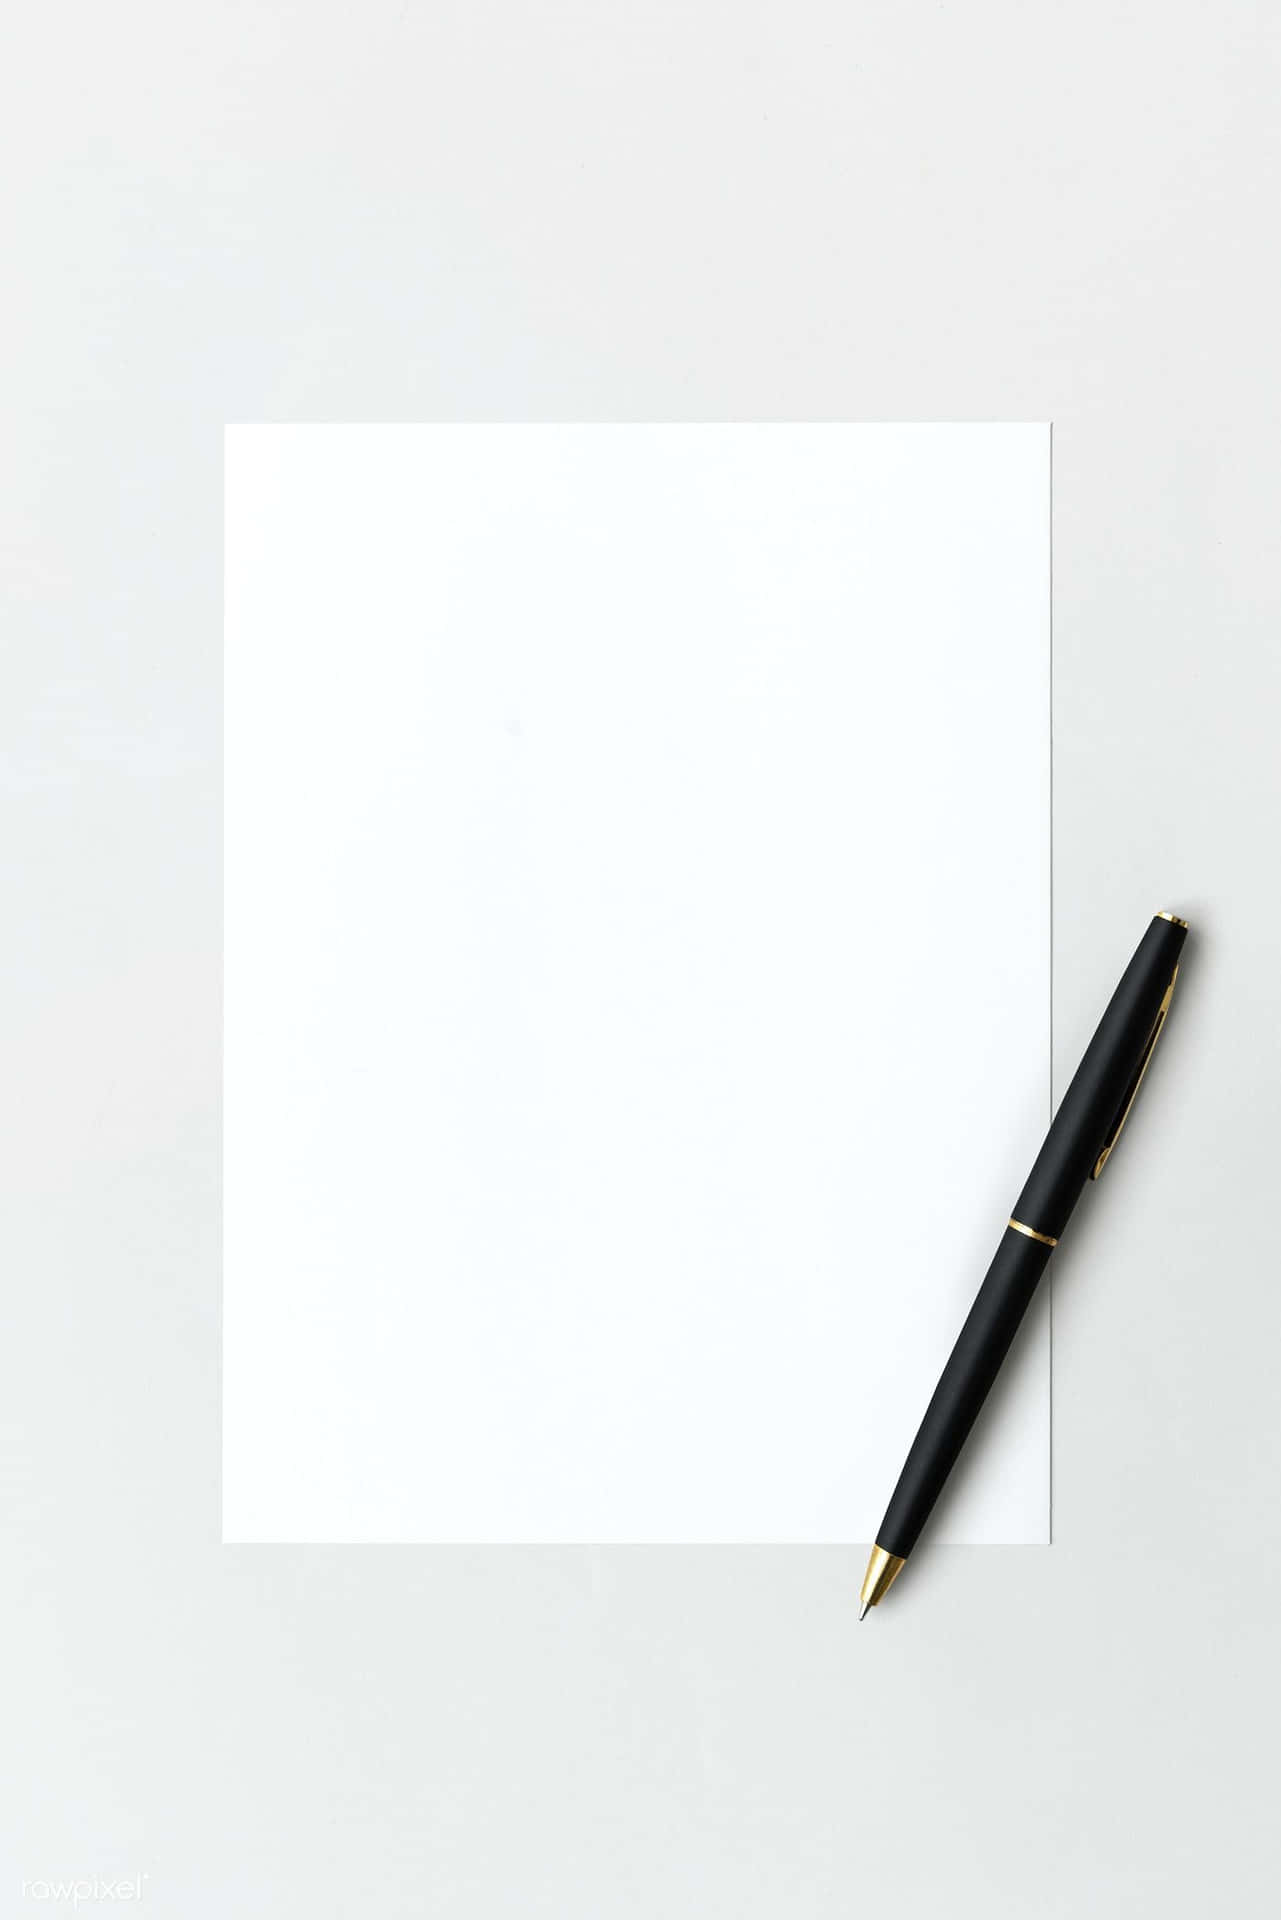 Einweißes Blatt Papier Mit Einem Stift Darauf